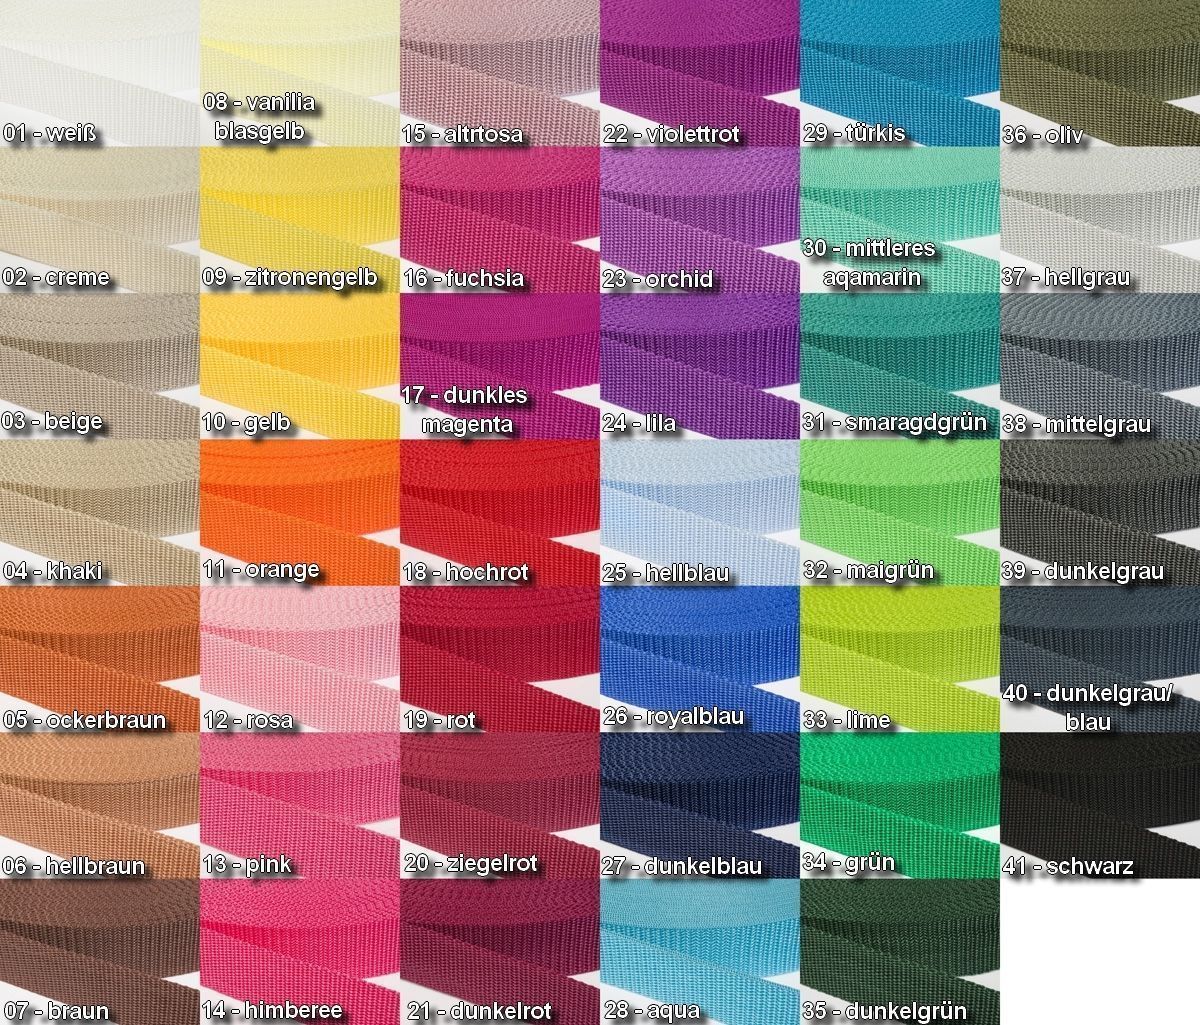 Gurtband 30mm breit aus Polypropylen in 41 Farben 40 - dunkelgrau/blau 6 Meter